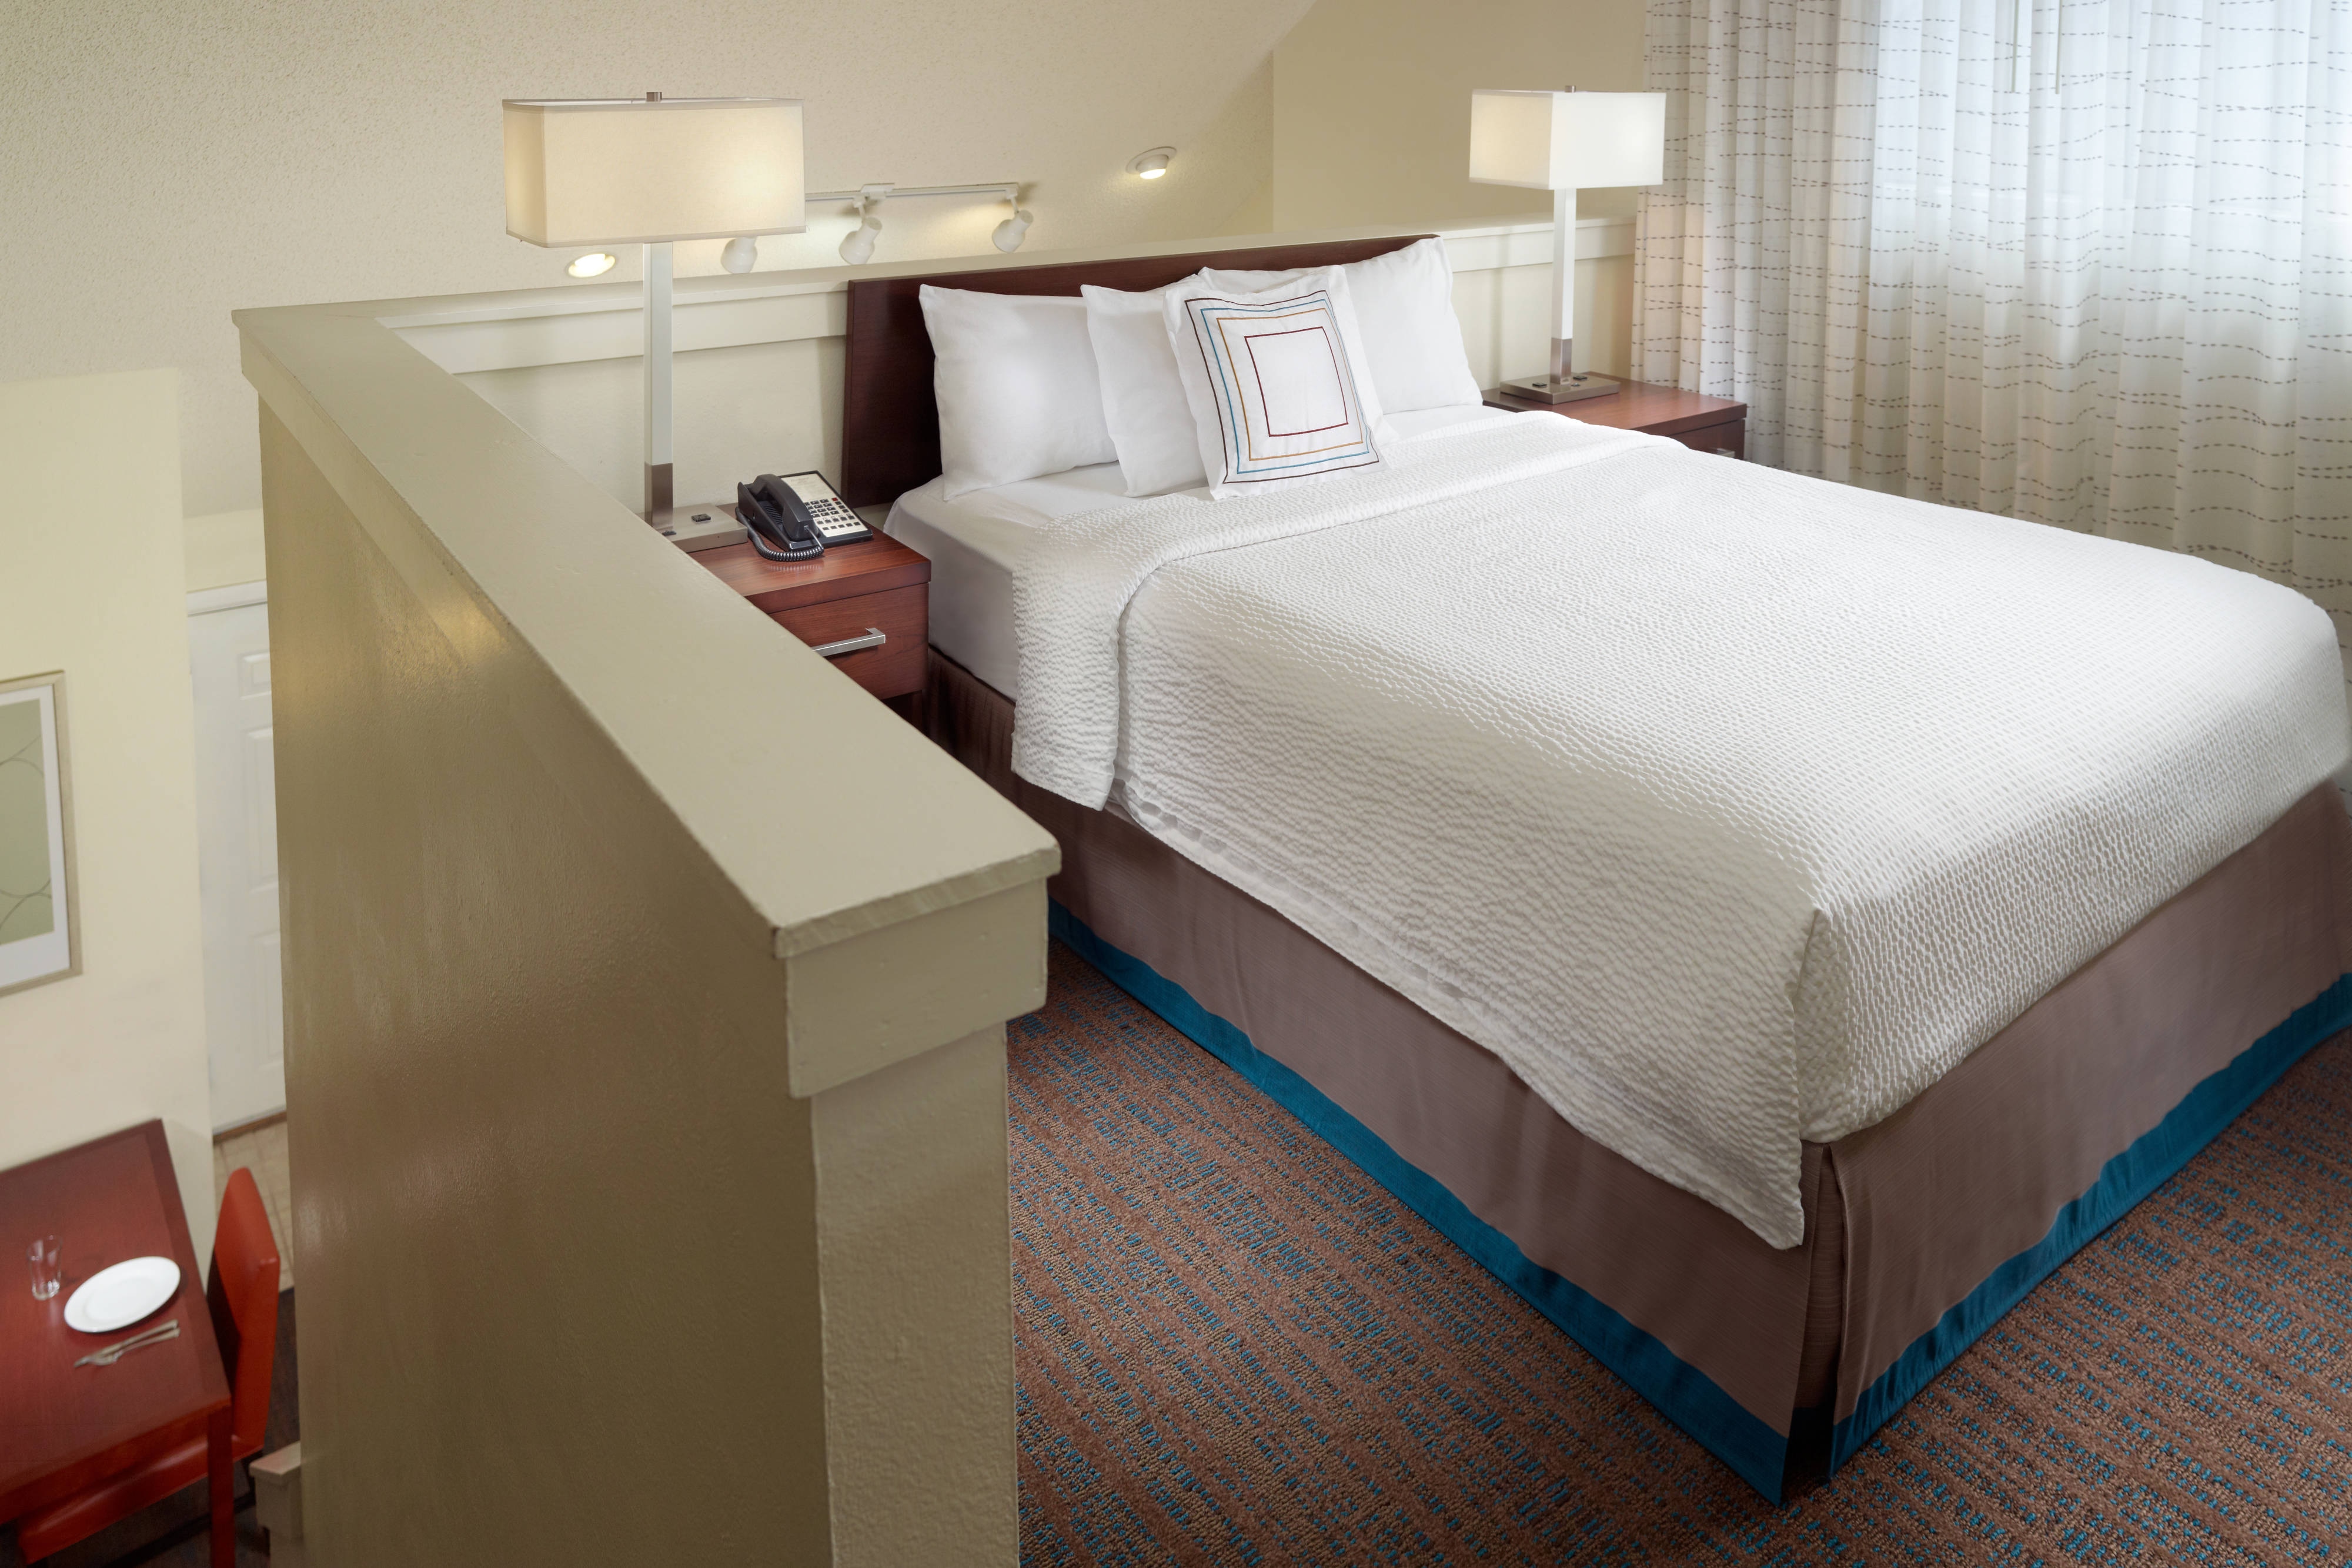 Hotels with 2-Bedroom Suites Nashville  Residence Inn Nashville